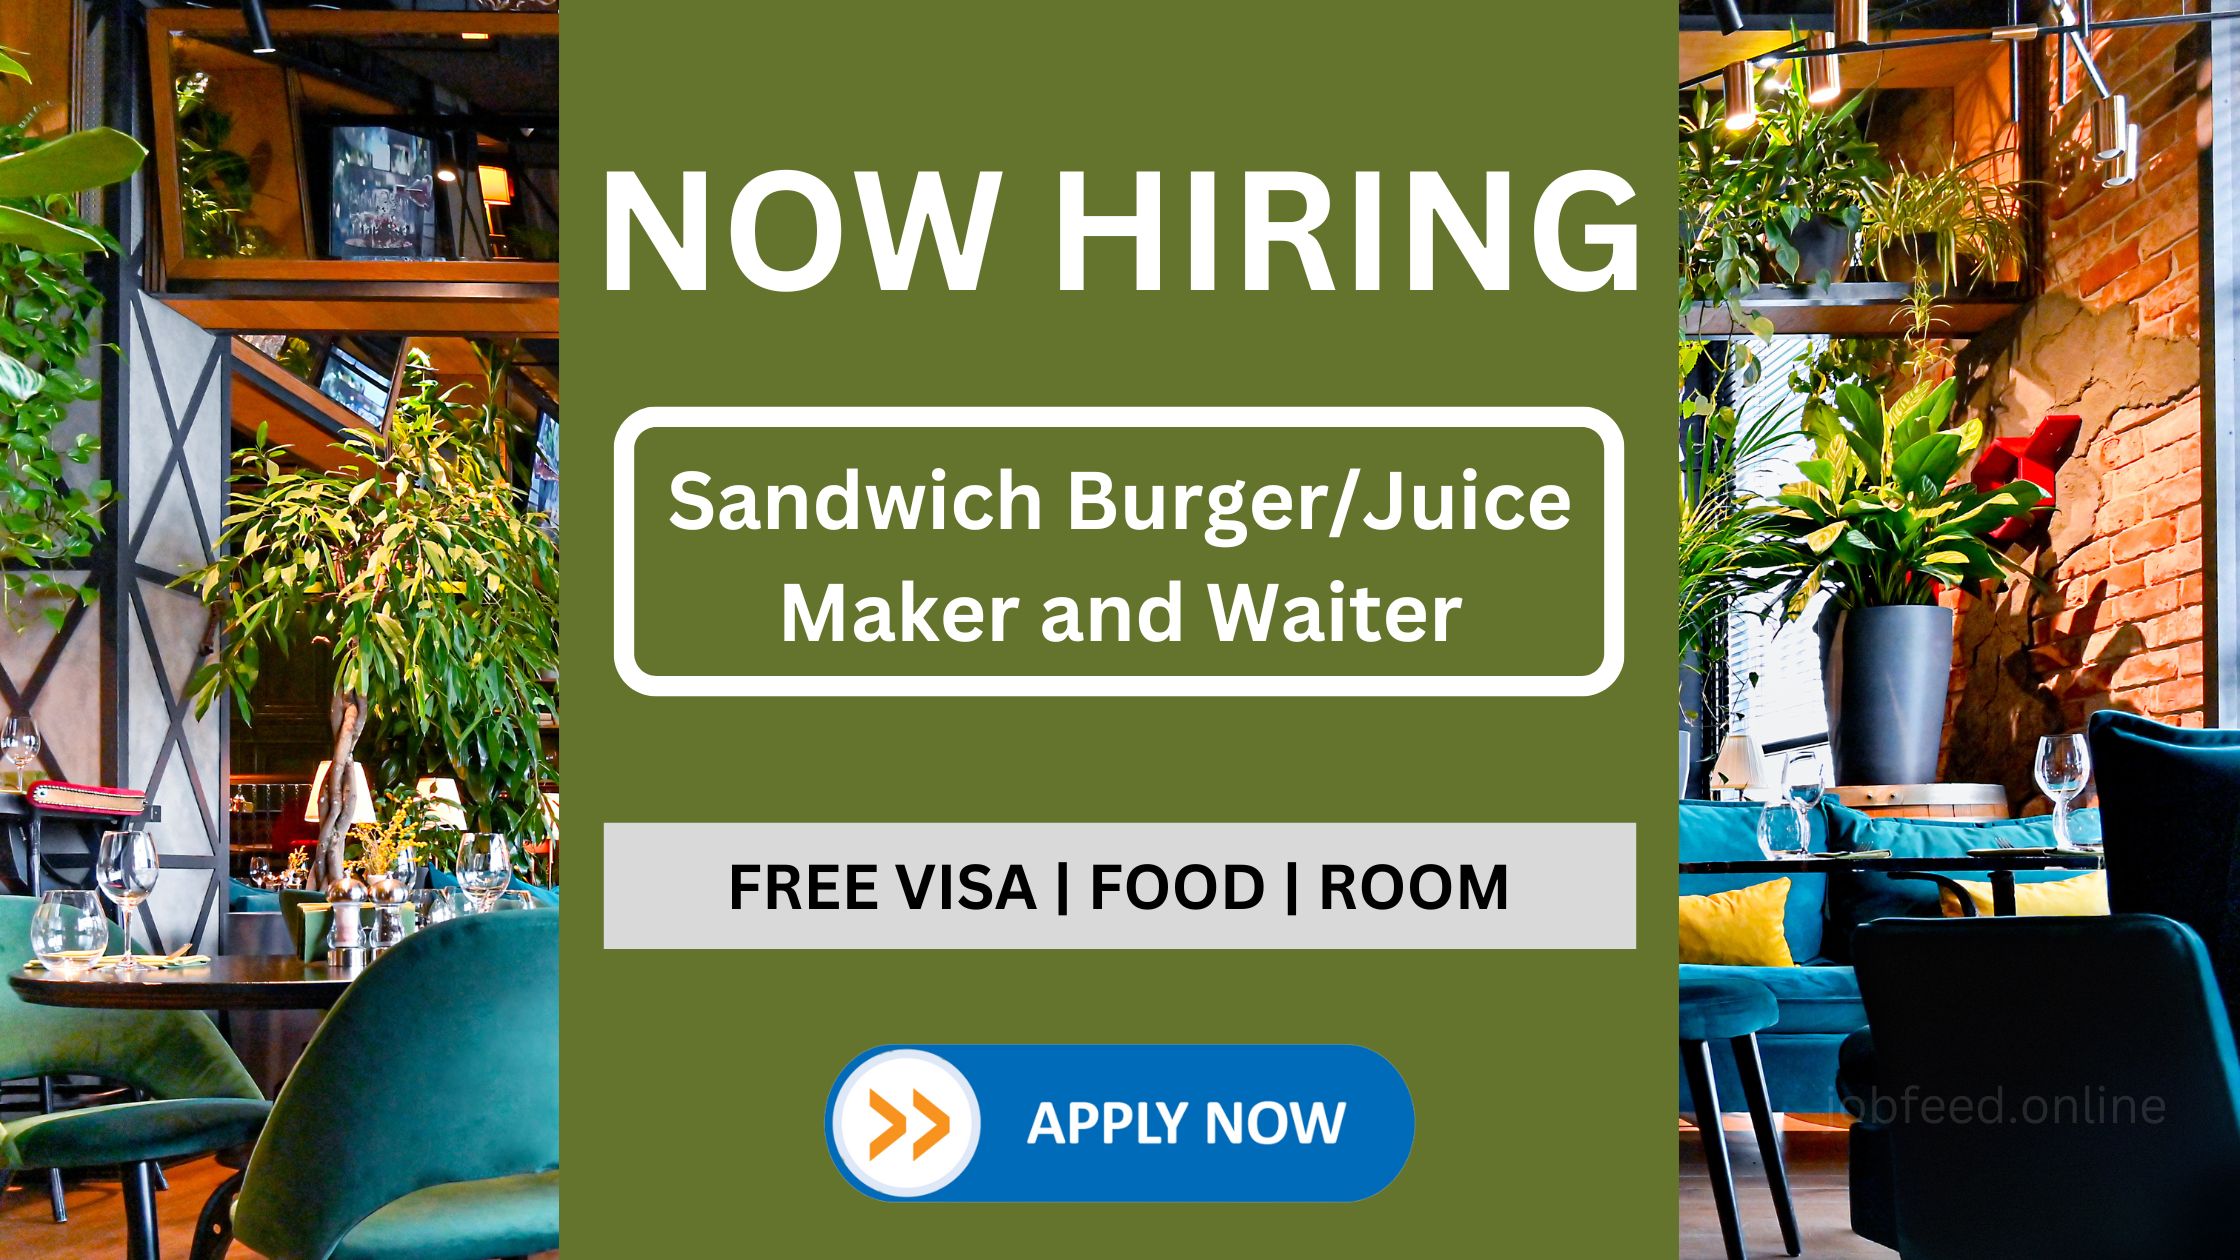 سینڈوچ برگر/جوس بنانے والا اور ویٹر 1500 ایڈ کی تنخواہ کے ساتھ